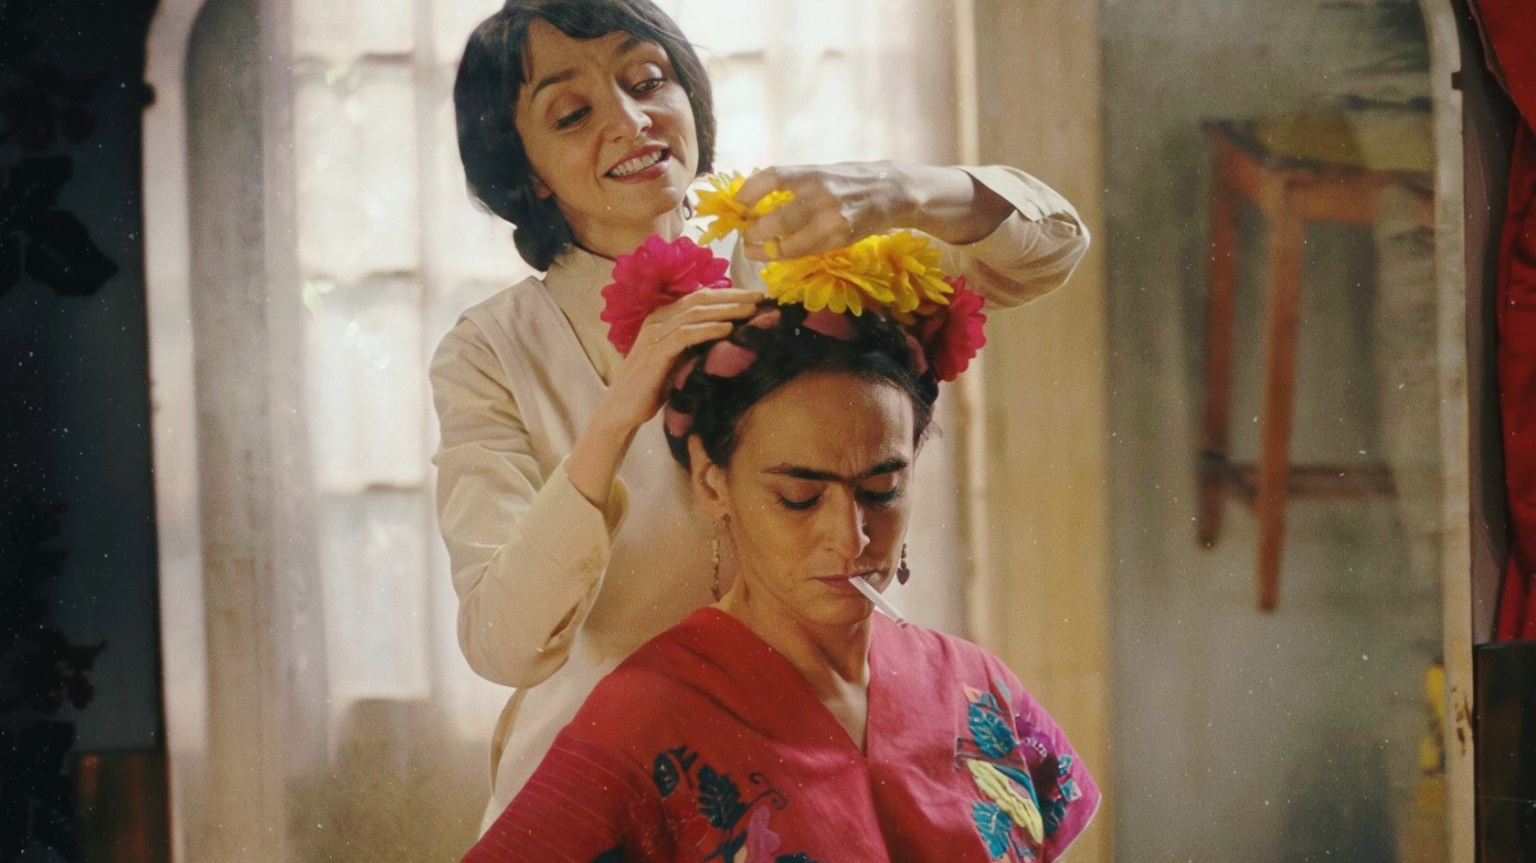 El primer festival de cine dedicado a la moda anuncia su primera edición digital con un film de Frida Kahlo